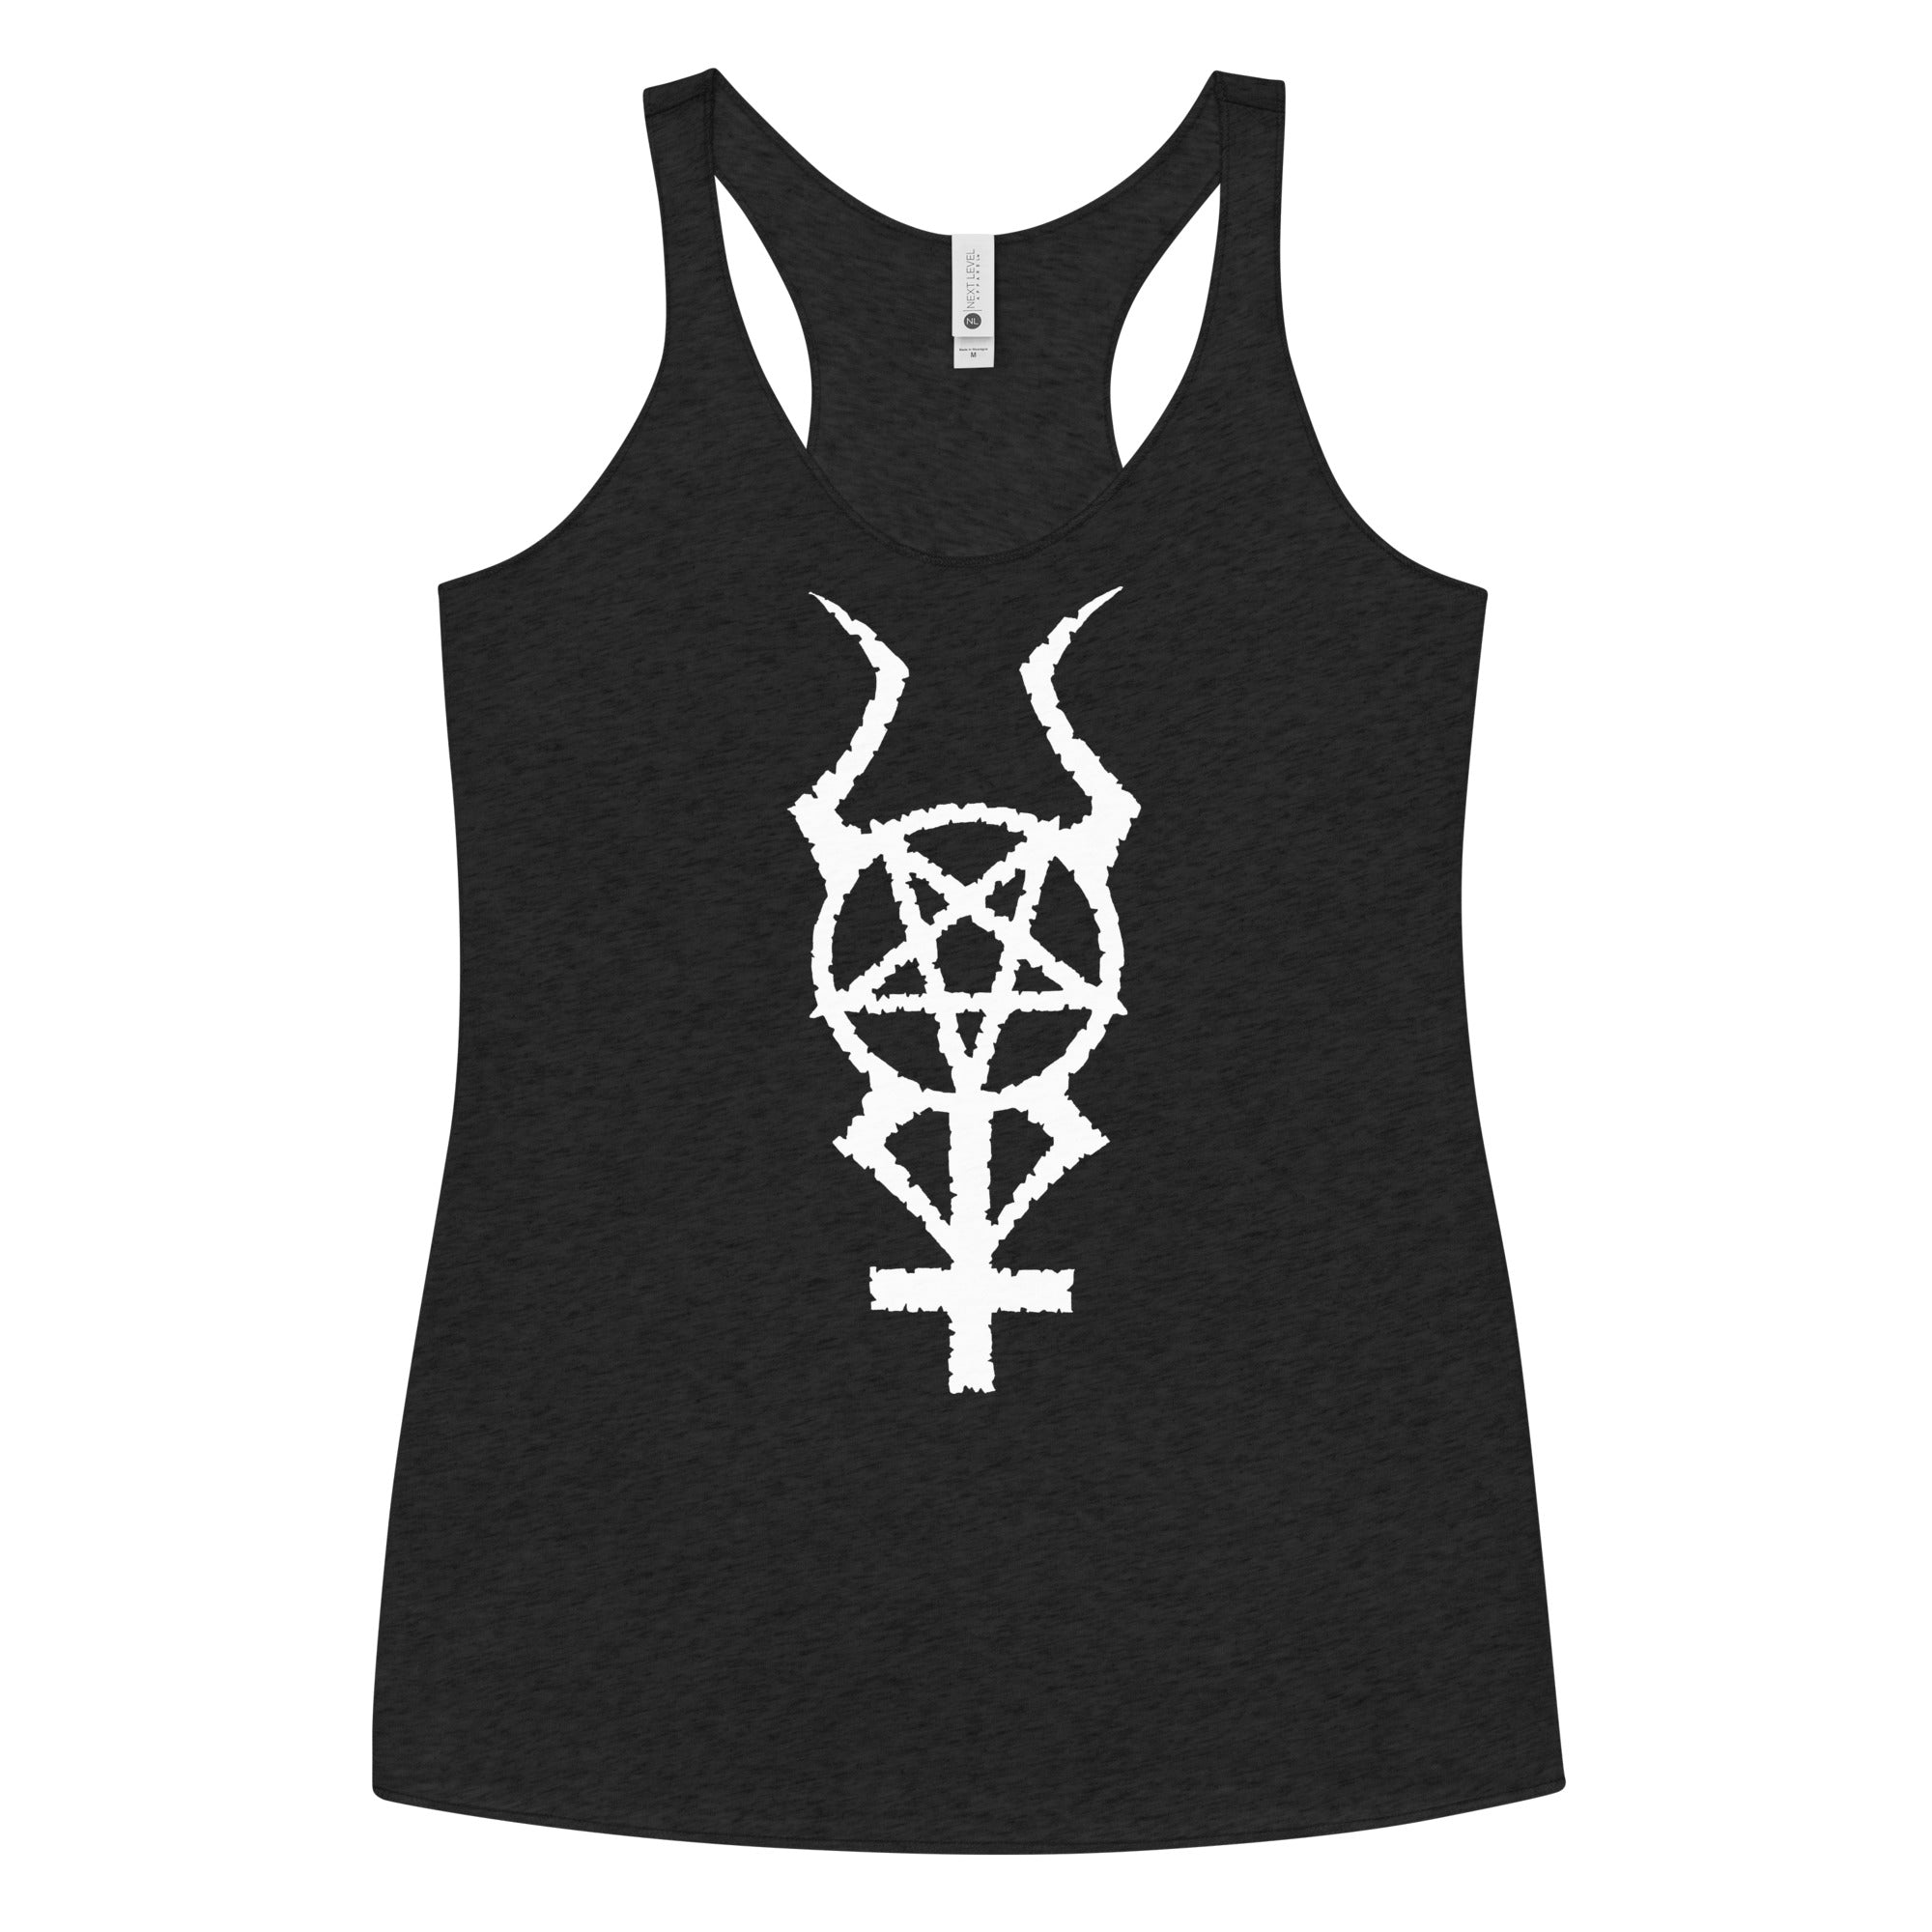 White Horned Pentacross Ritual Pentagram Cross Women's Racerback Tank Top Shirt - Edge of Life Designs